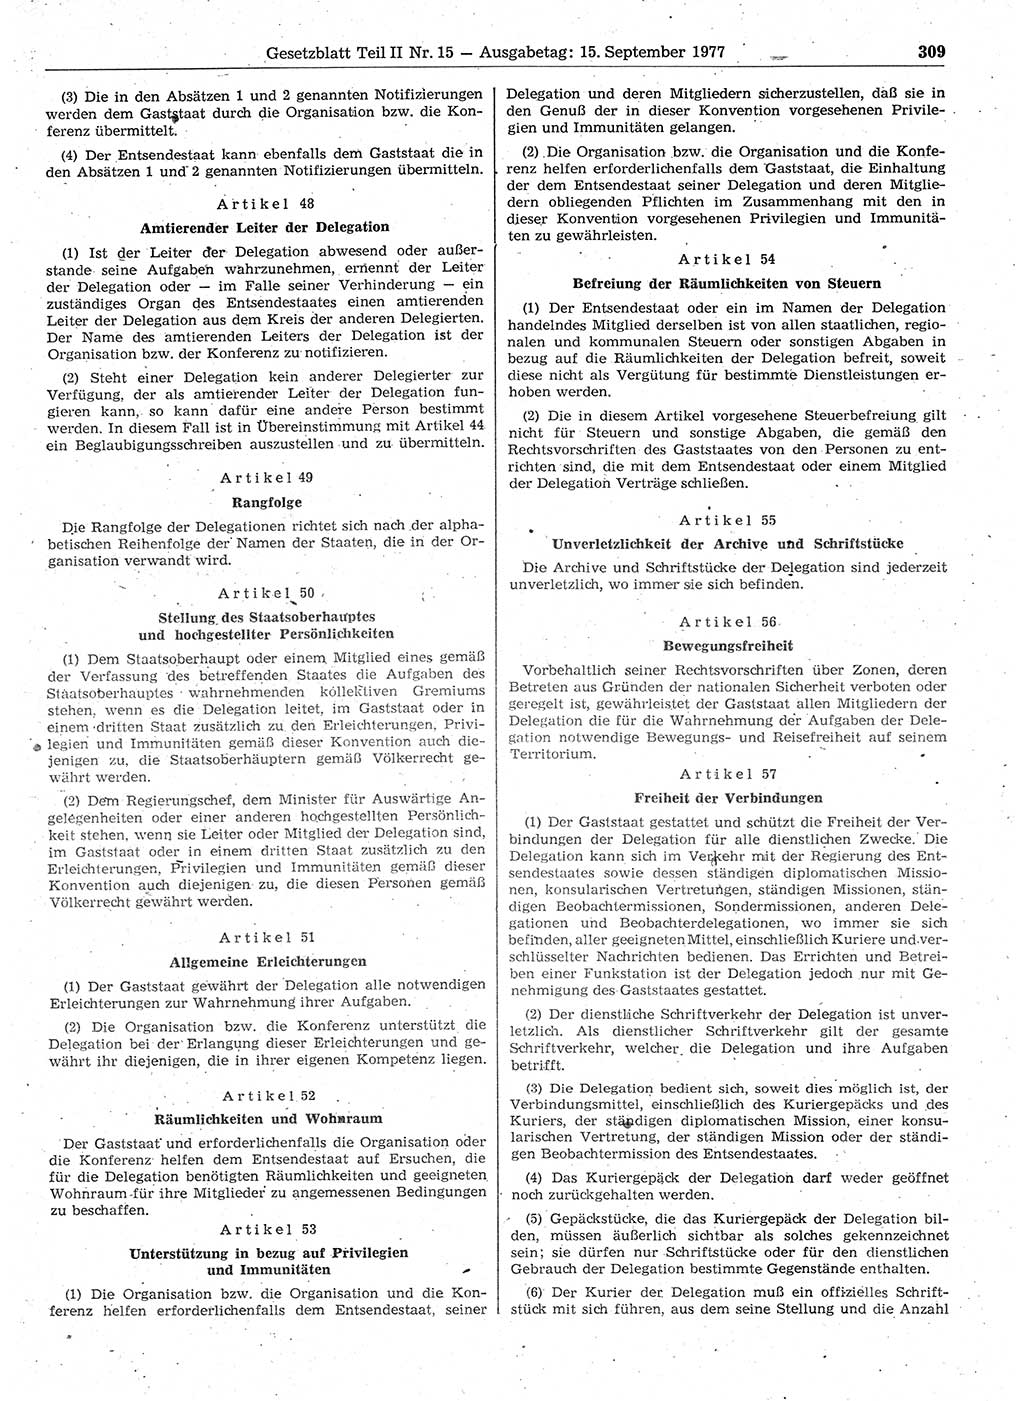 Gesetzblatt (GBl.) der Deutschen Demokratischen Republik (DDR) Teil ⅠⅠ 1977, Seite 309 (GBl. DDR ⅠⅠ 1977, S. 309)